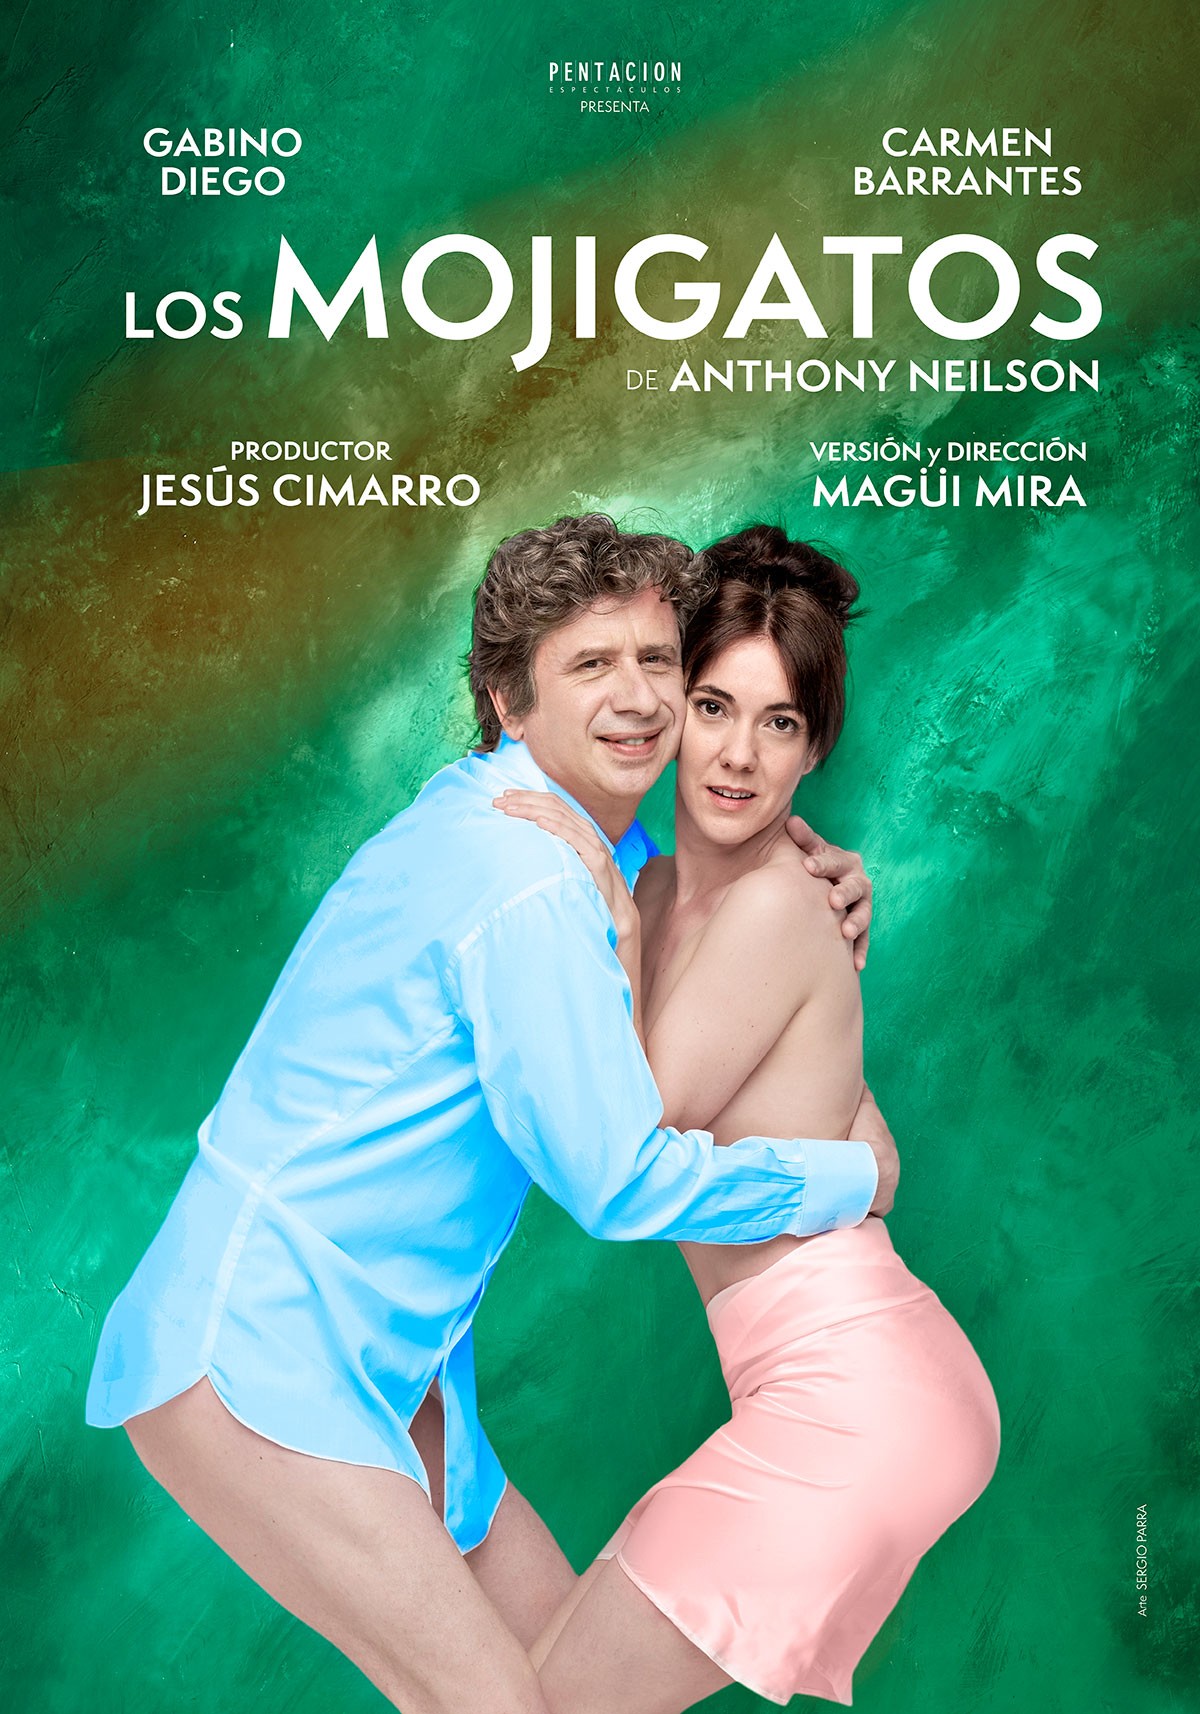 Gabino Diego y Carmen Barrantes protagonizan en Valencia ‘Los mojigatos’, dirigidos por Magüi Mira